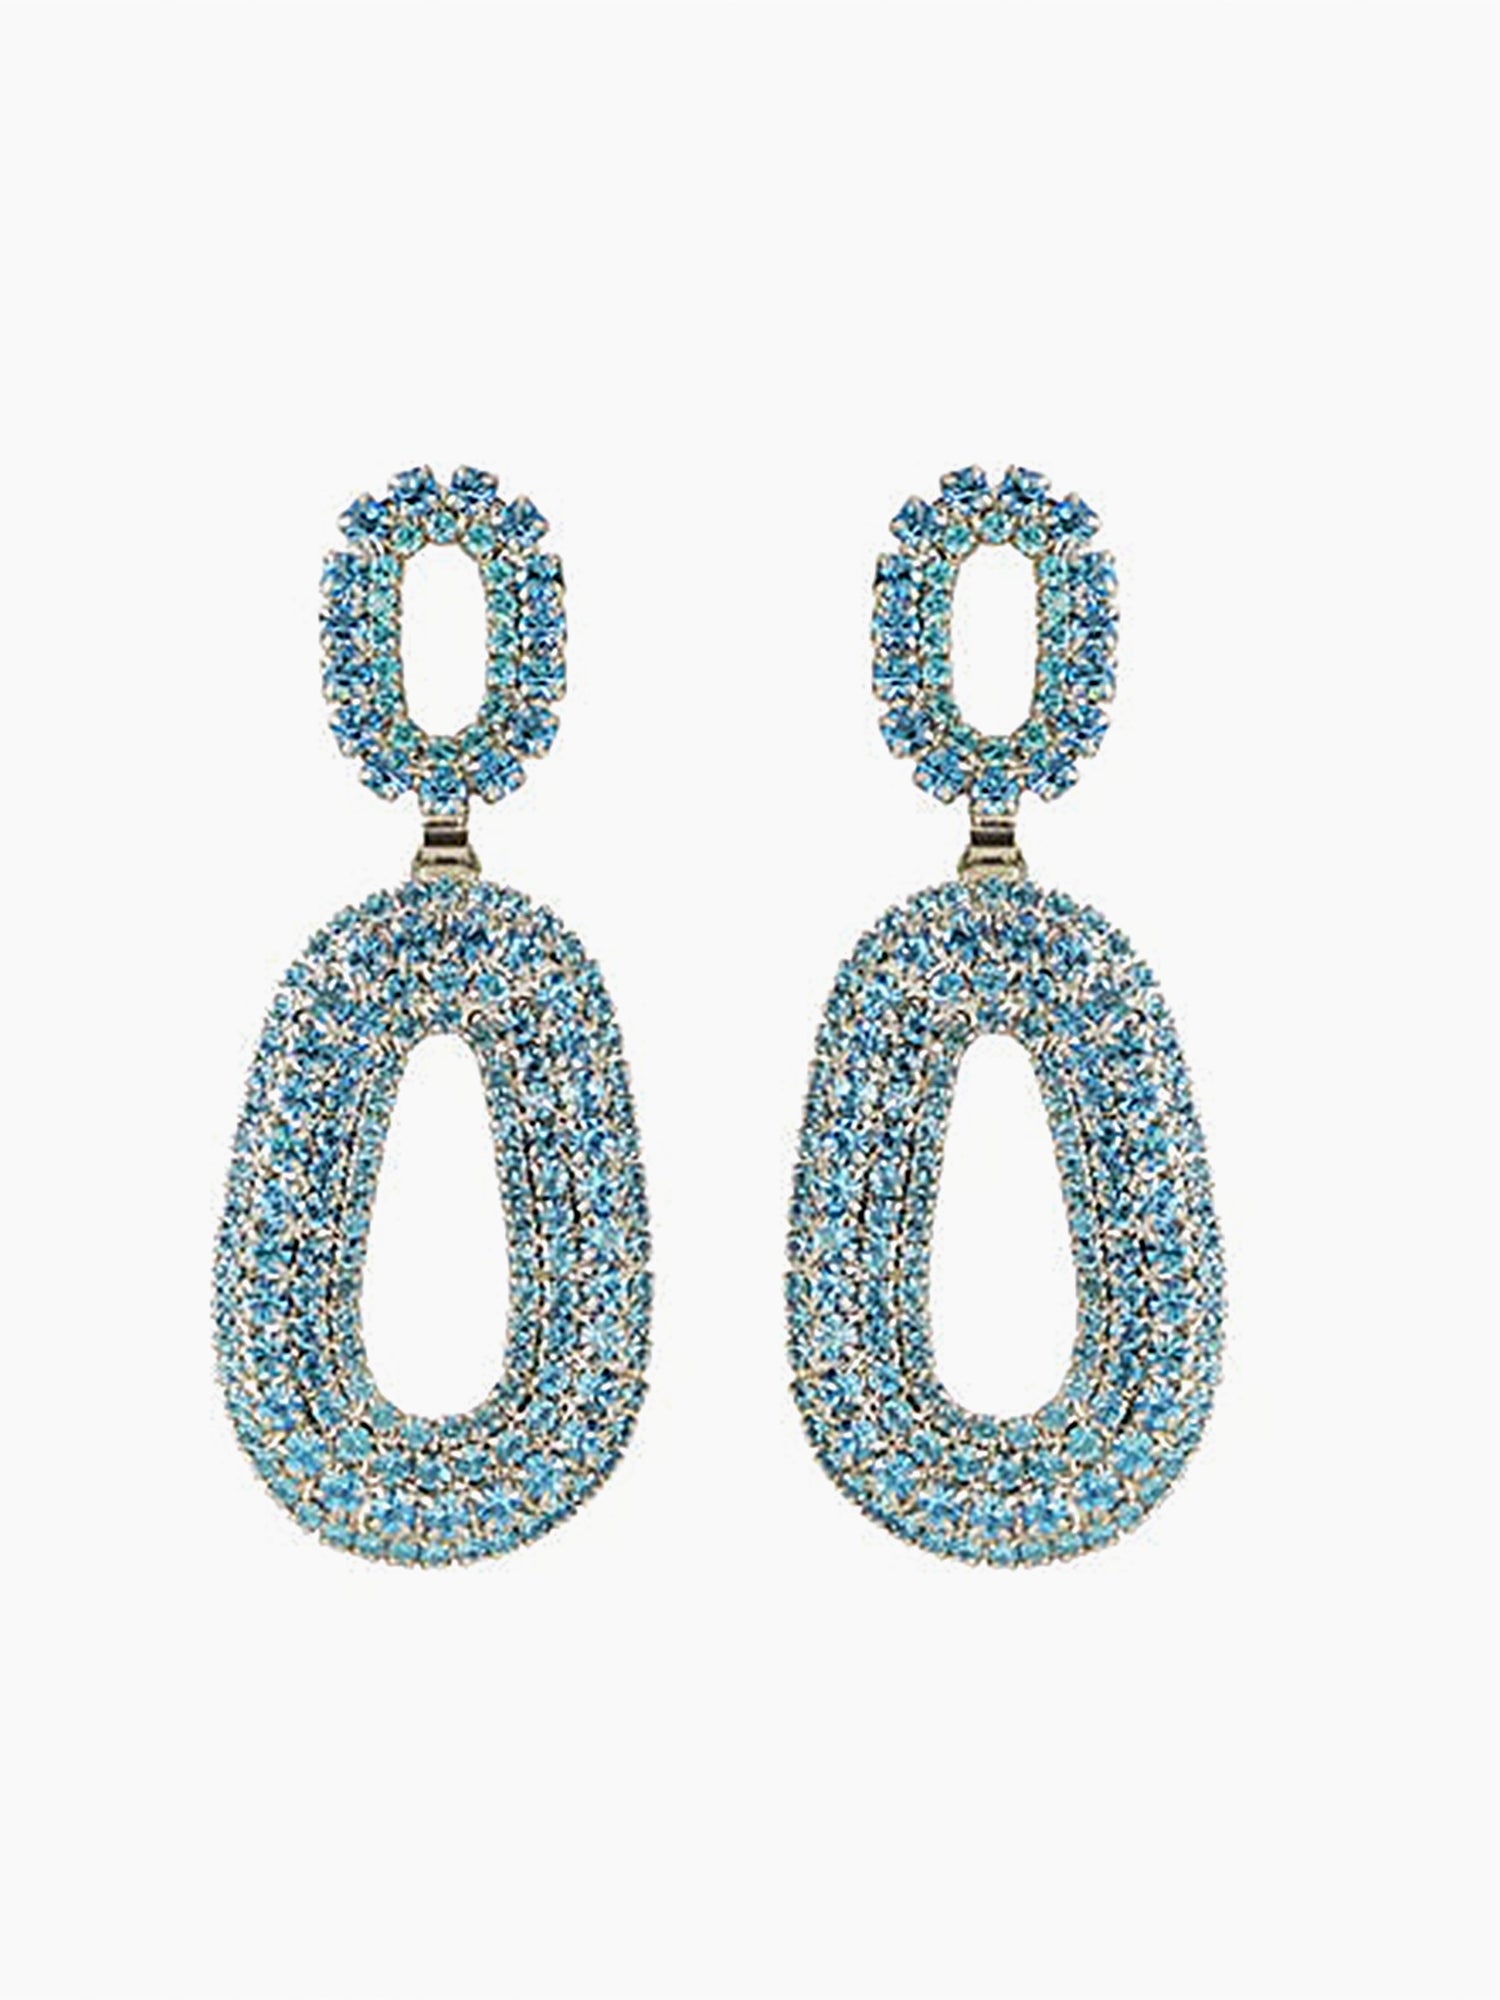 HELENE ZUBELDIA Duo Crystal Earrings Clips